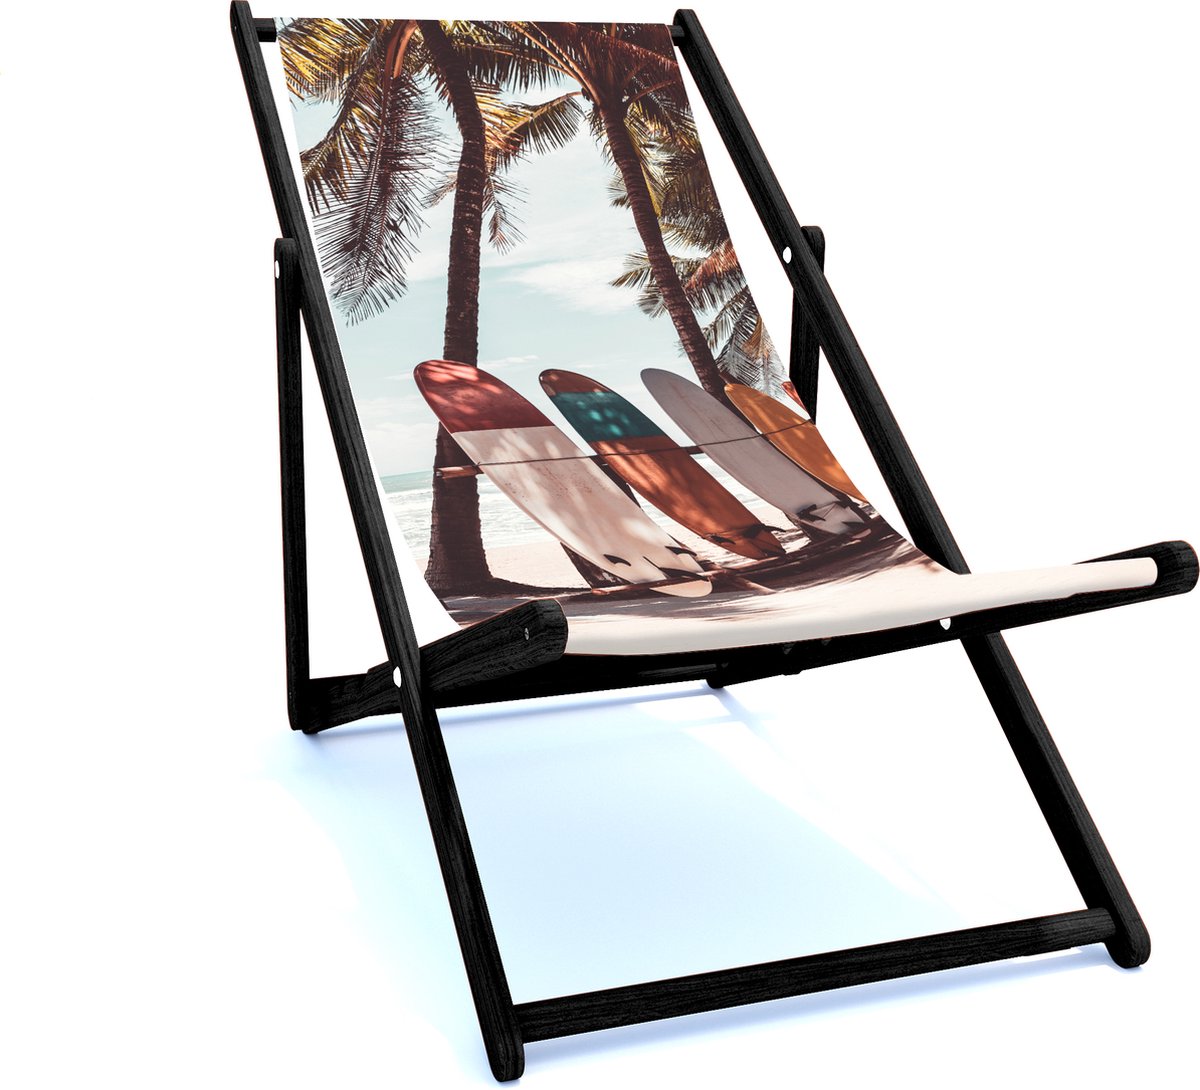 Holtaz Strandstoel Hout Inklapbaar Comfortabele Zonnebed Ligbed met verstelbare Lighoogte met stoffen Surfing zwart houten frame